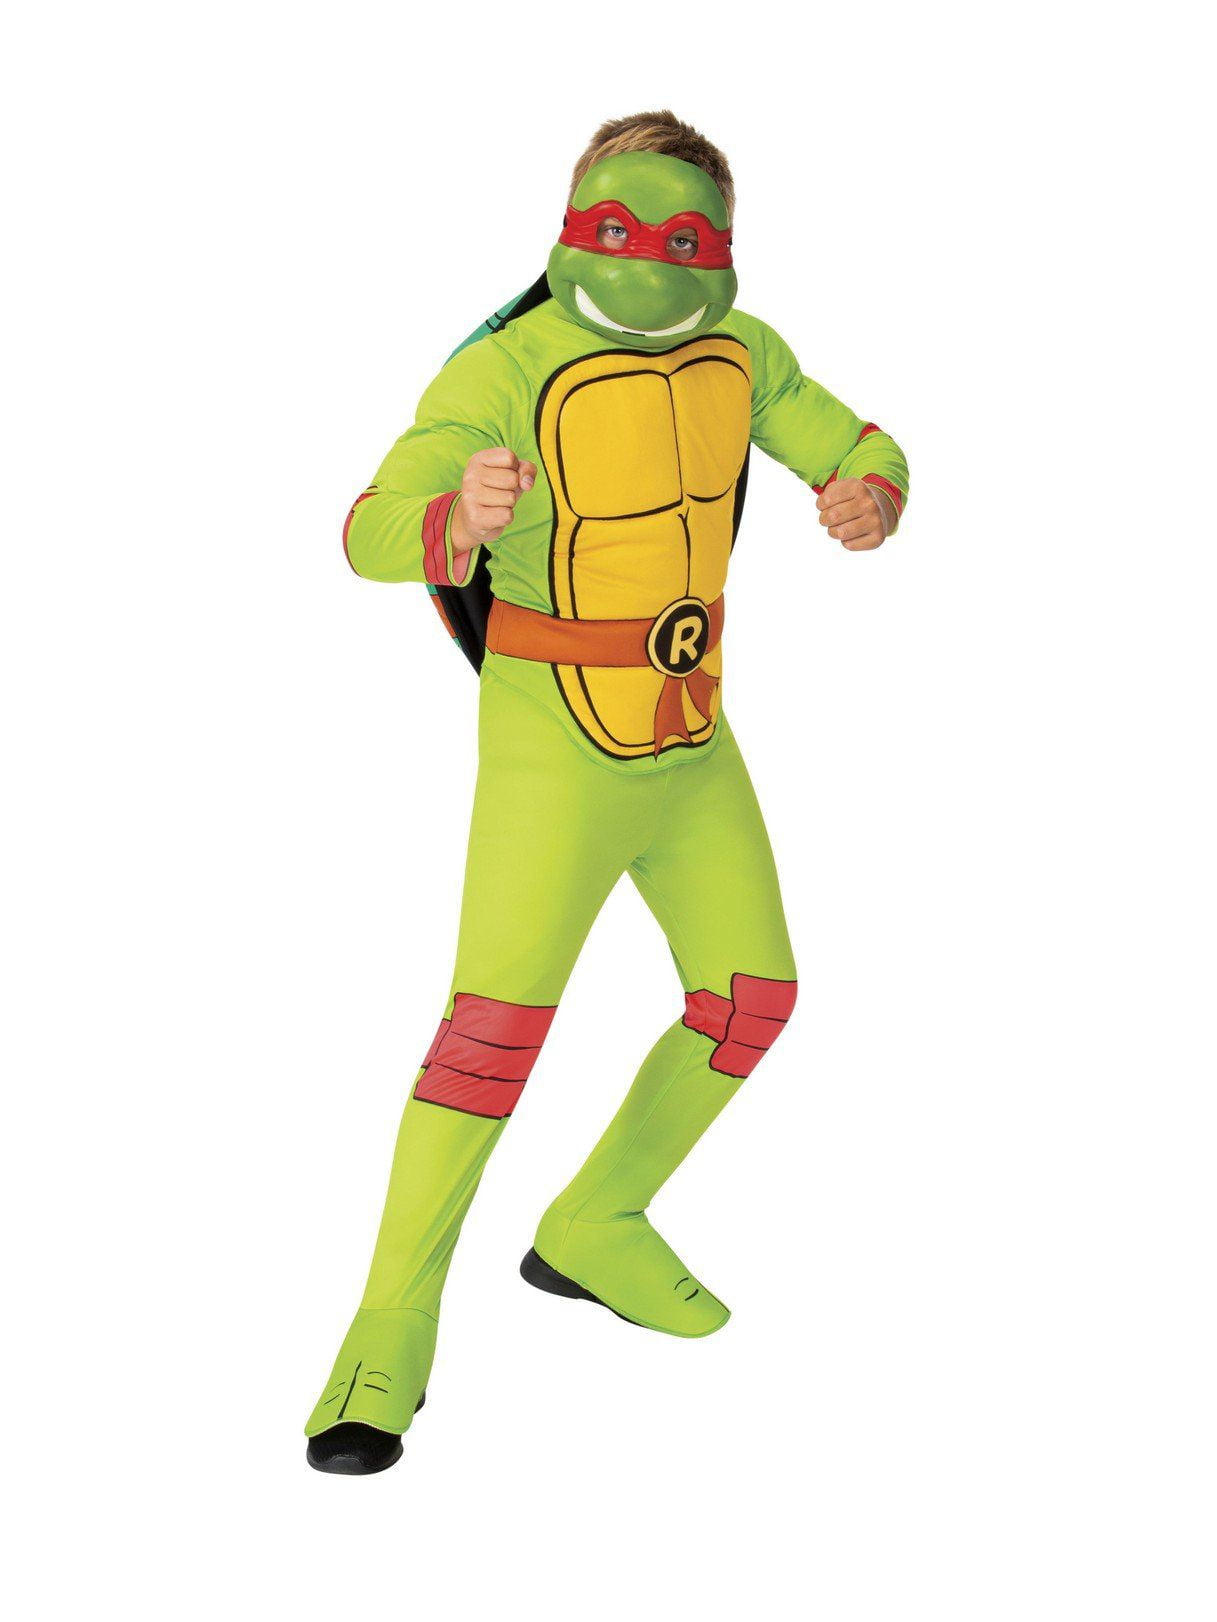 MEDIUM Teenage Mutant Ninja Turtles Leonardo Costume child size SMALL LARGE 